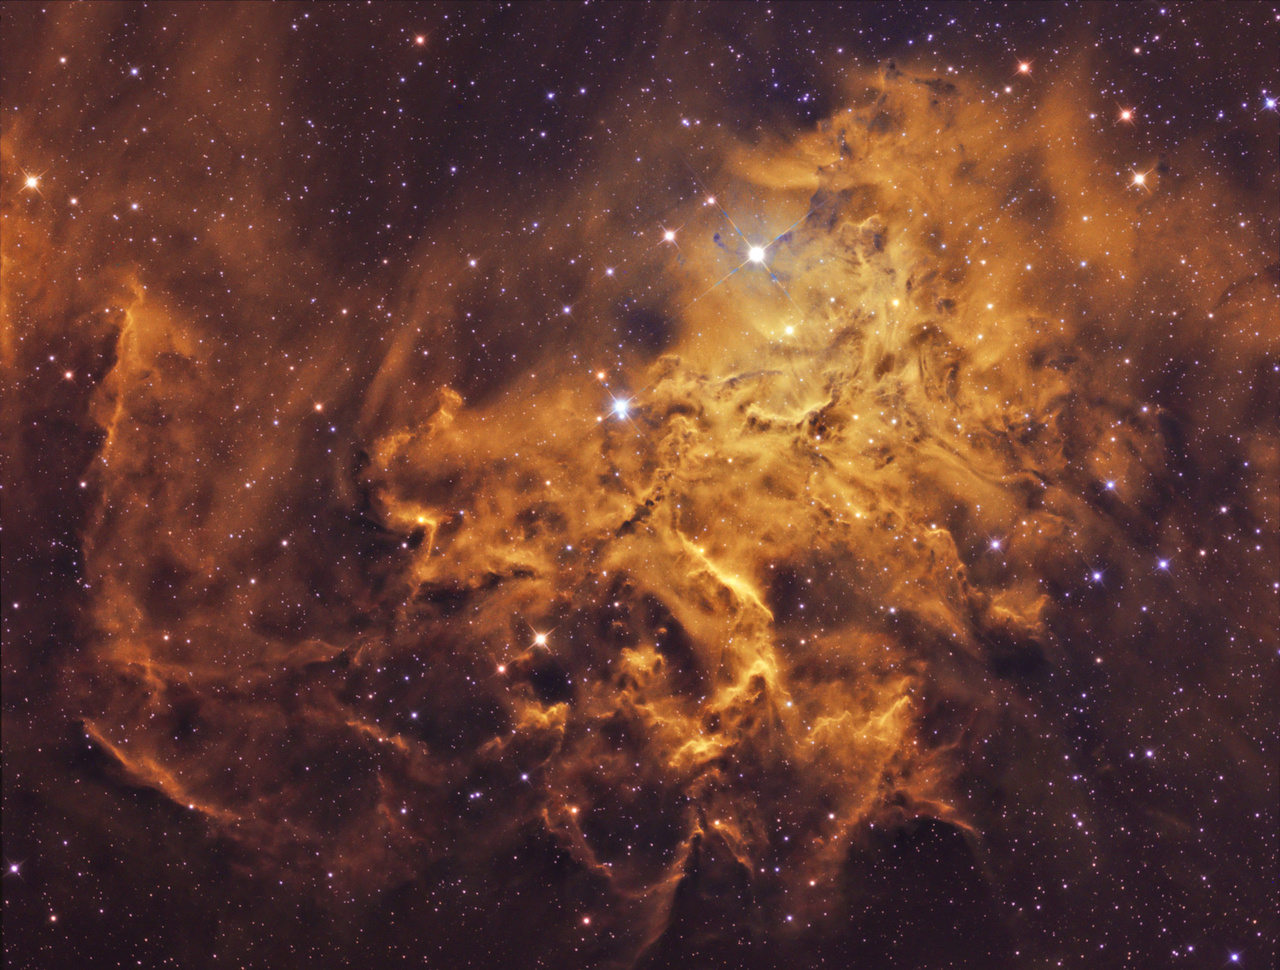 "Valami nagy-nagy tüzet kéne rakni." Ezen a fotón a Szekeres csillagkép szívében található diffúz köd, a Lángoló csillag-köd látható. Megjelenésében nagyon hasonlít a tűzhöz, lobogó lángnyelvekhez, innen a fantázia név. Ezt a látványt nagyban erősíti a HST, Hubble fotóknál is használt színpaletta, amelyet Bagi László kép elkészítésekor használt. A lángoló Csillag-köd Földünktől 1500 fényév távolságra található. A végleges fotó 28,5 óra expozíció eredménye.